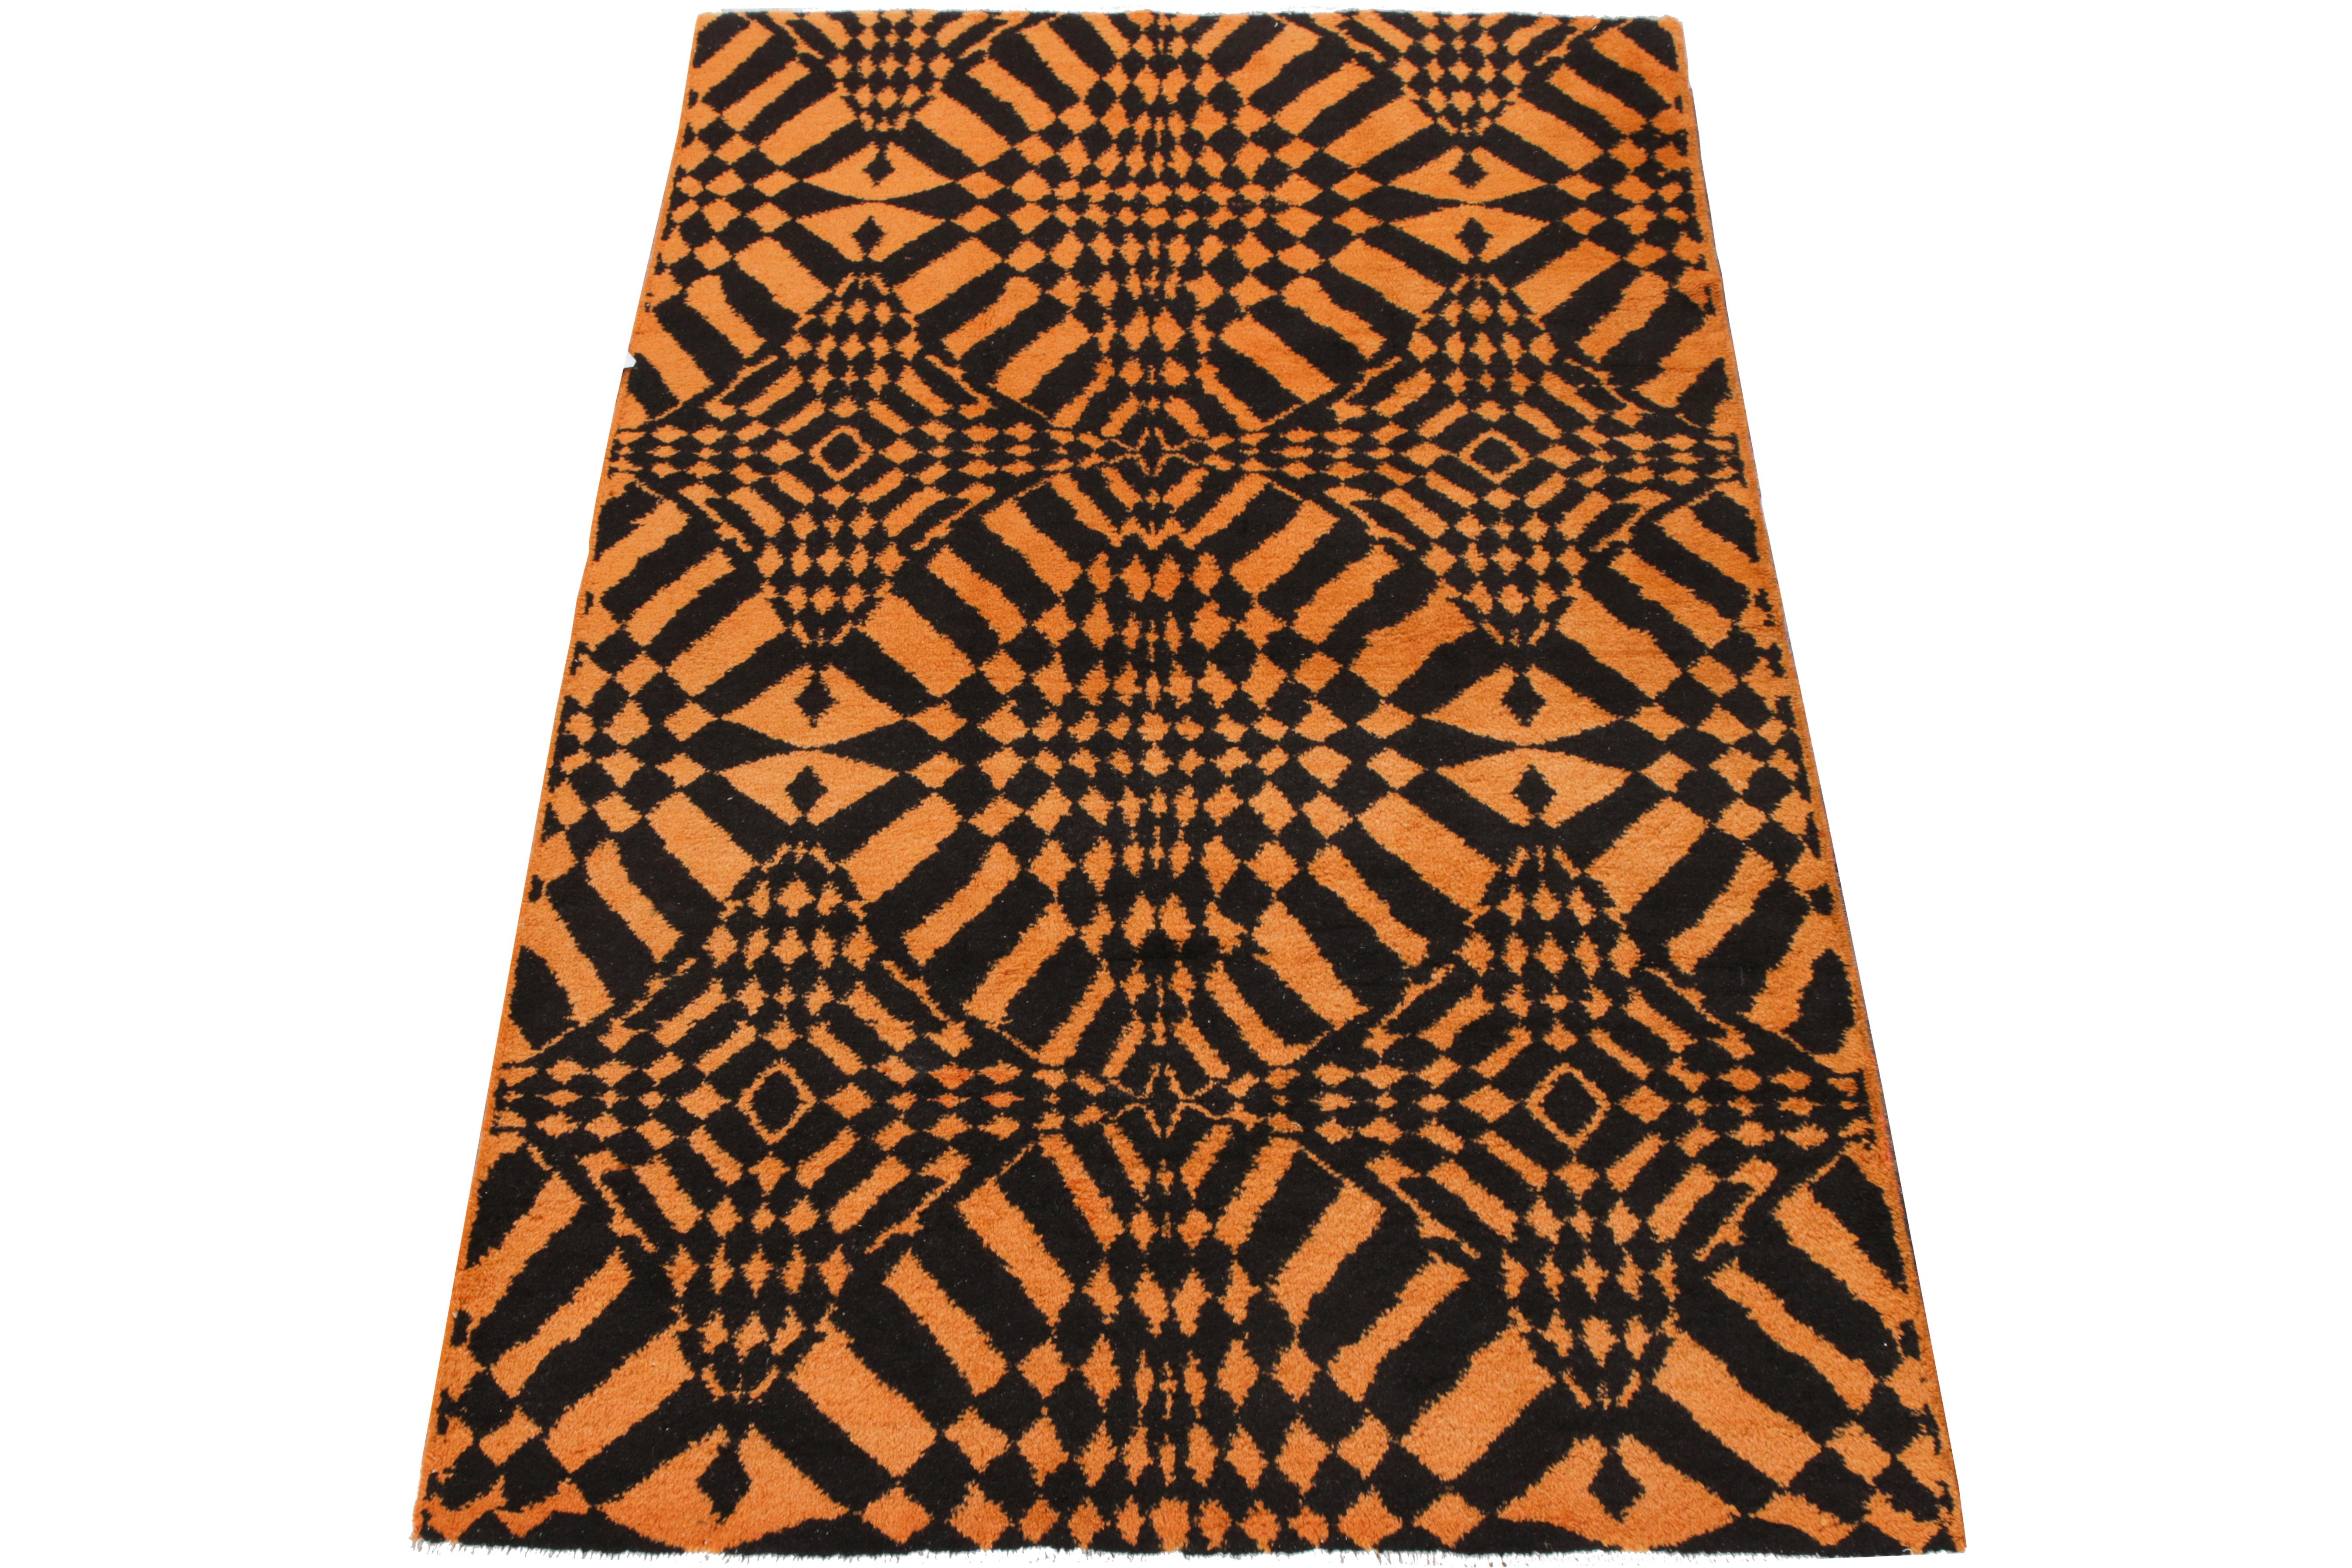 Ce tapis Art déco 4x7, noué à la main, fait partie de la collection Pasha du milieu du siècle de Rug & Kilim, qui comprend des œuvres remarquables du célèbre designer turc Zeki Muren. Originaire de Turquie vers 1960-1970, ce tapis présente le jeu